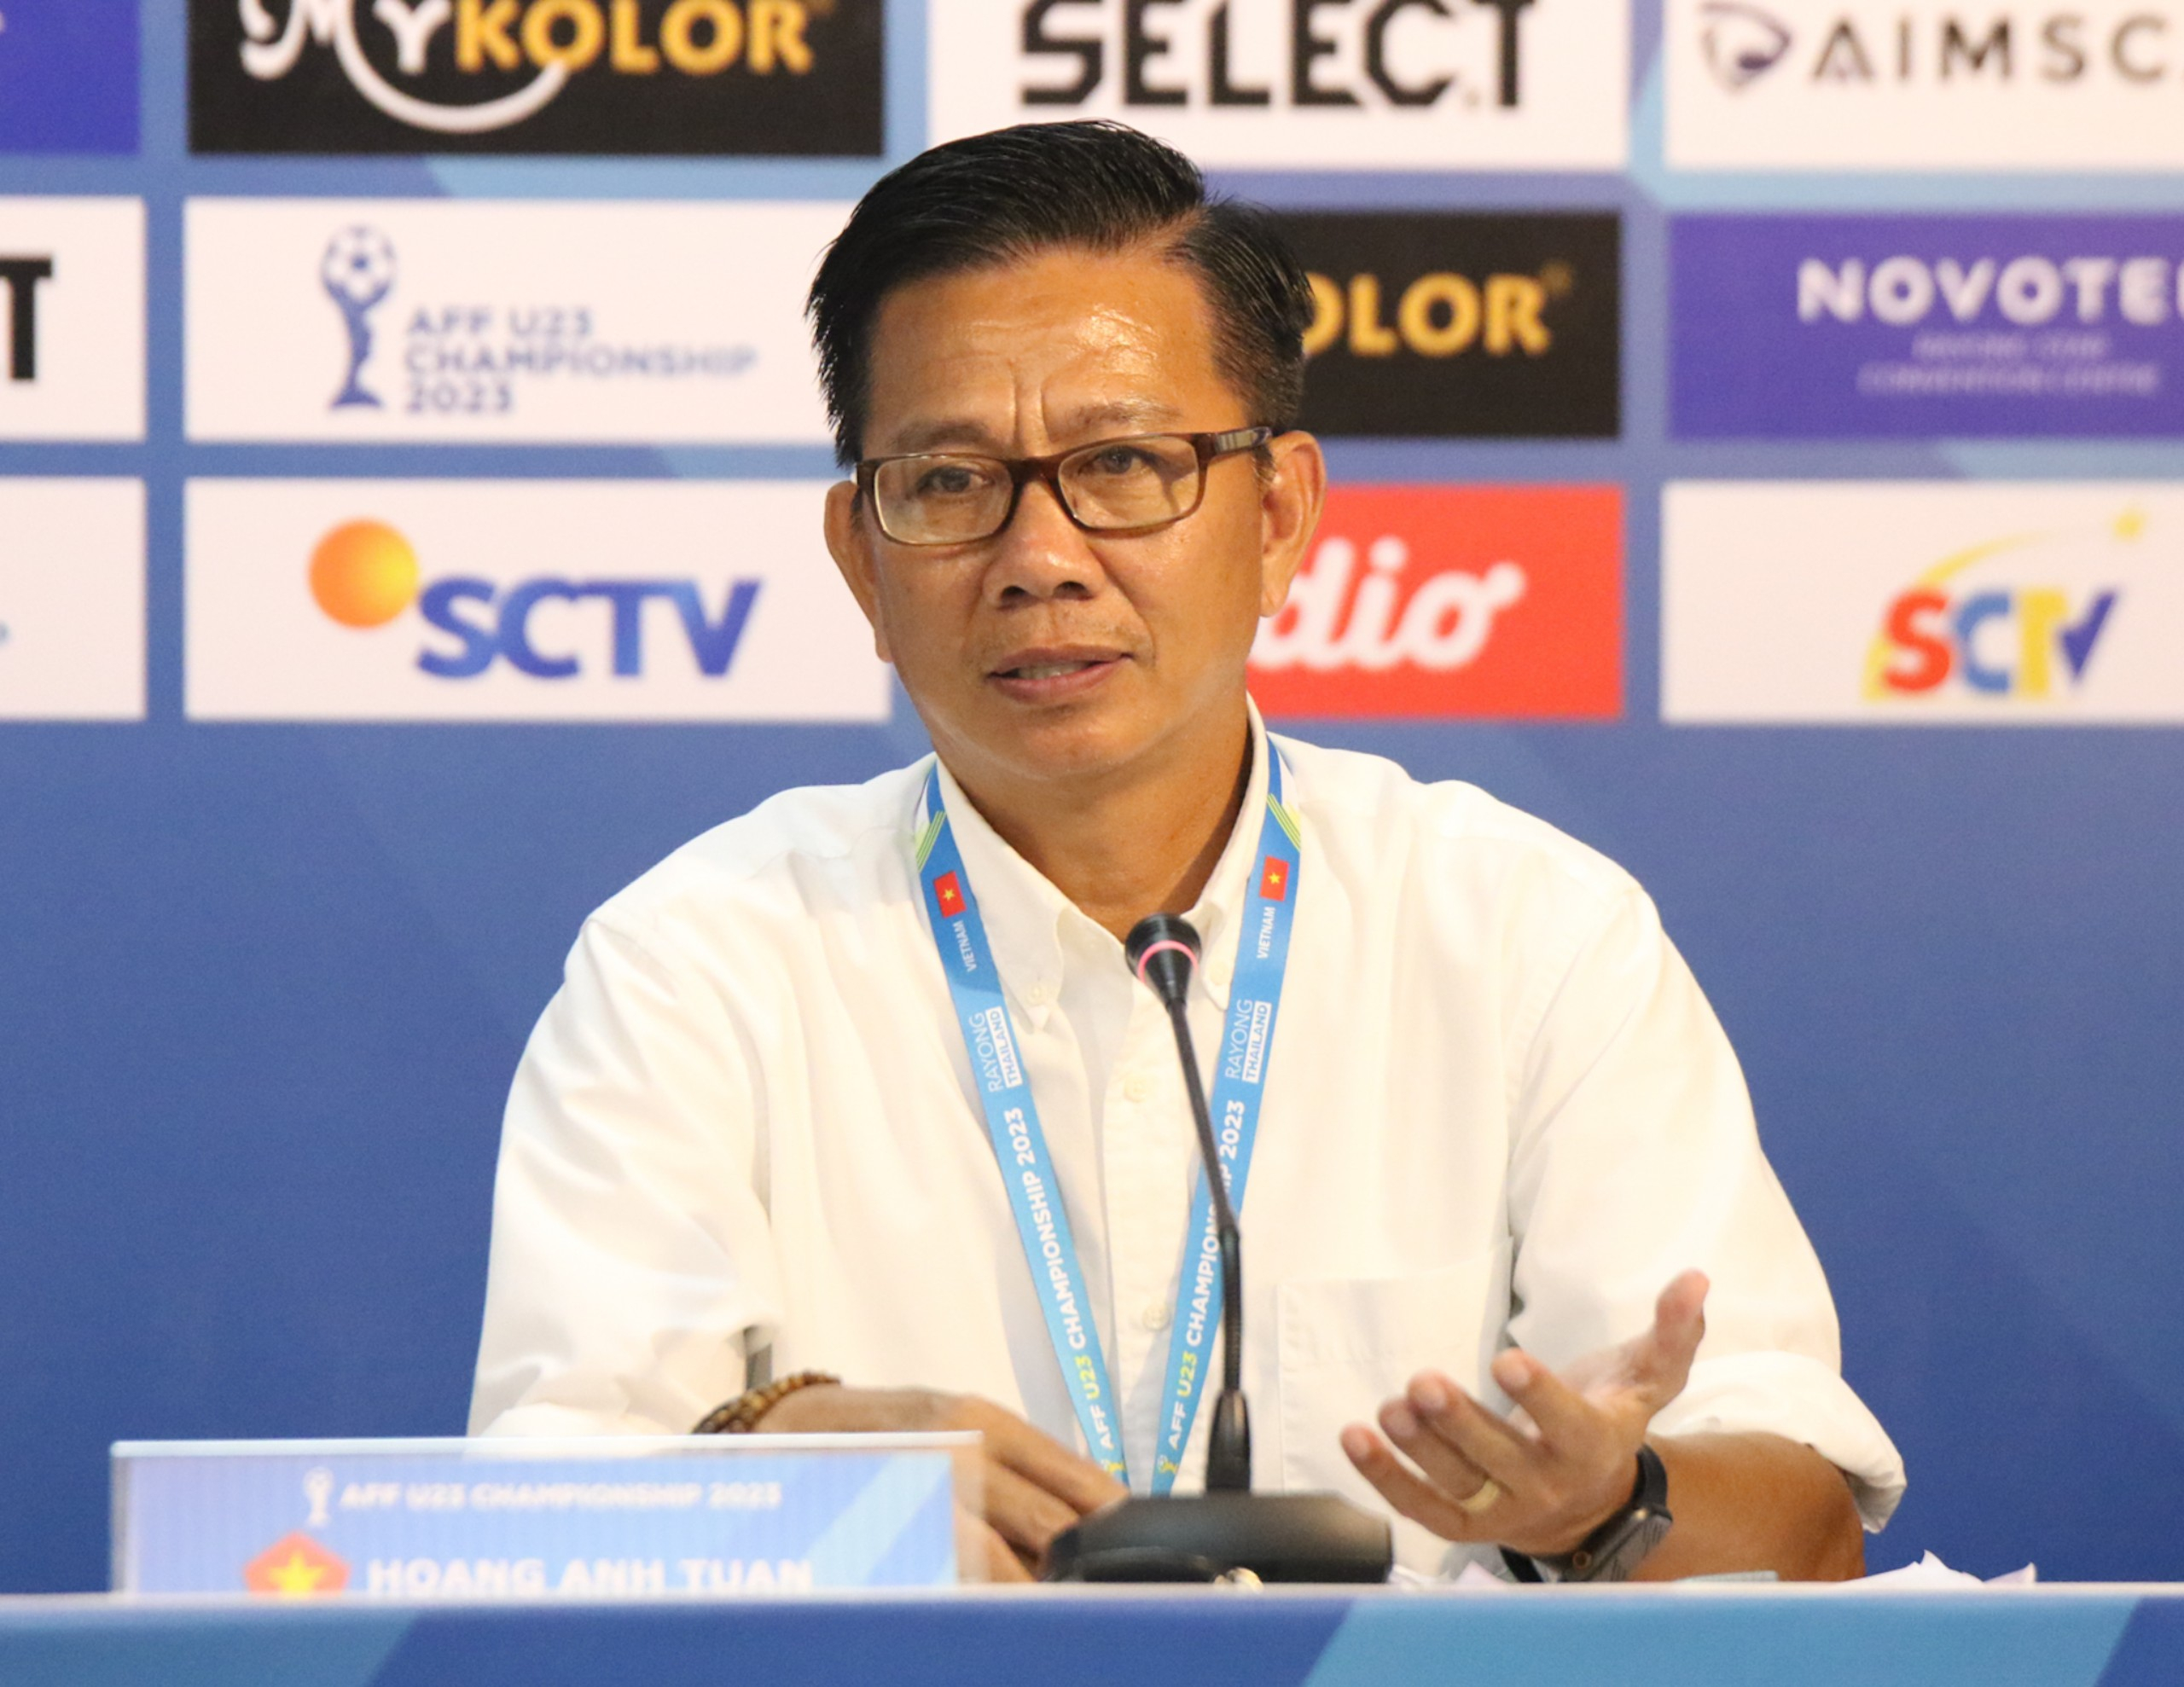 HLV Hoàng Anh Tuấn không hài lòng và muốn quên chiến thắng của U23 Việt Nam